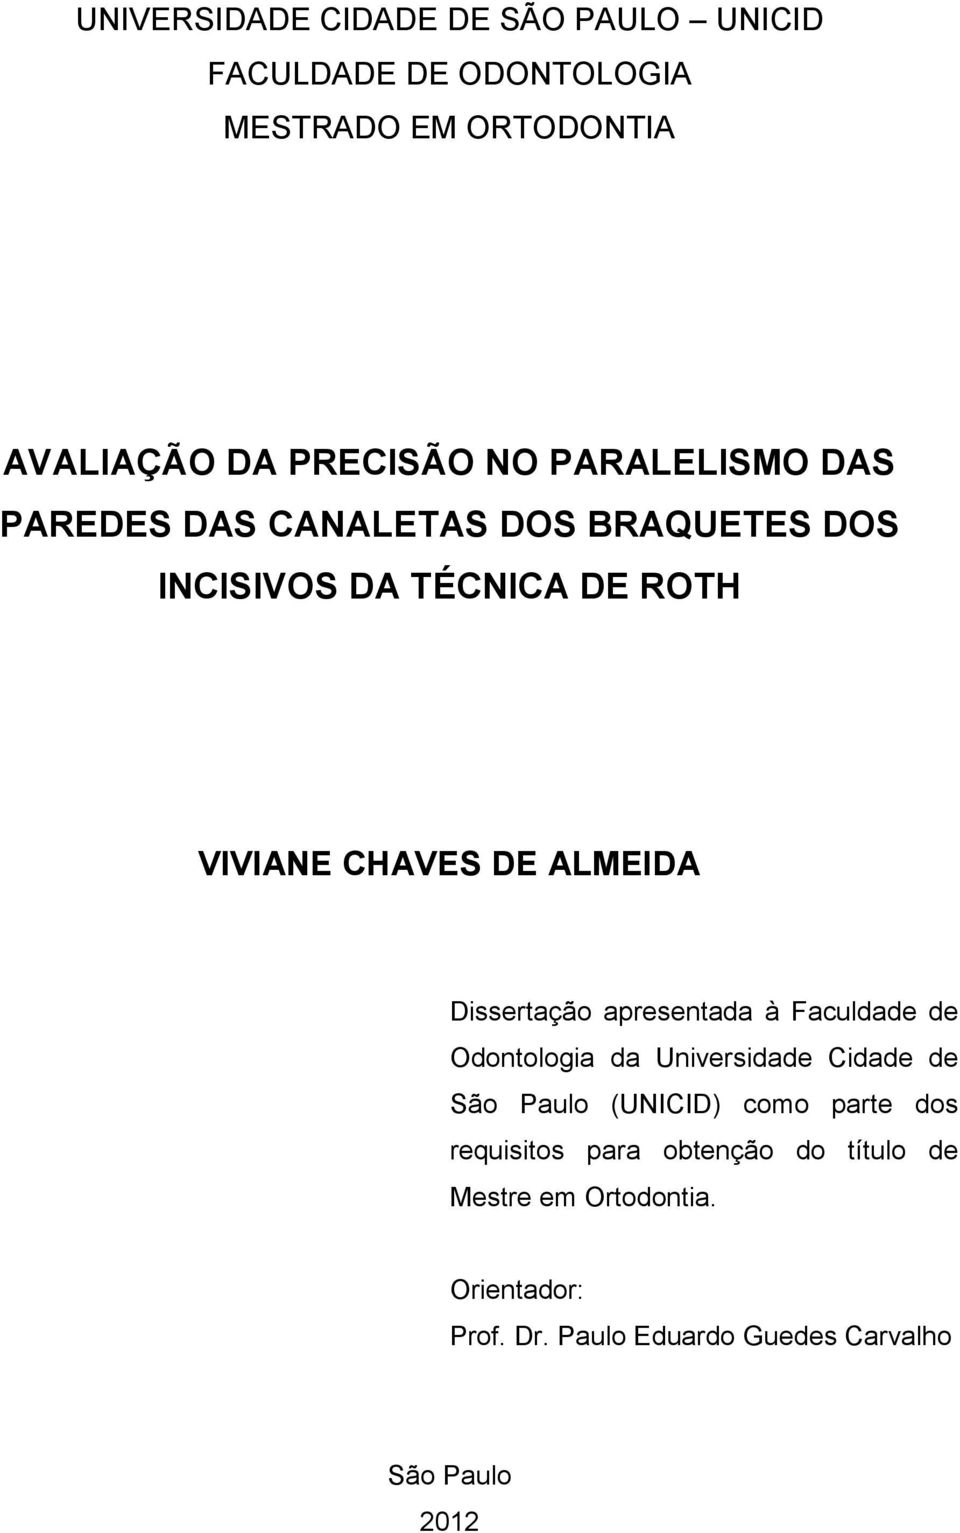 Dissertação apresentada à Faculdade de Odontologia da Universidade Cidade de São Paulo (UNICID) como parte dos